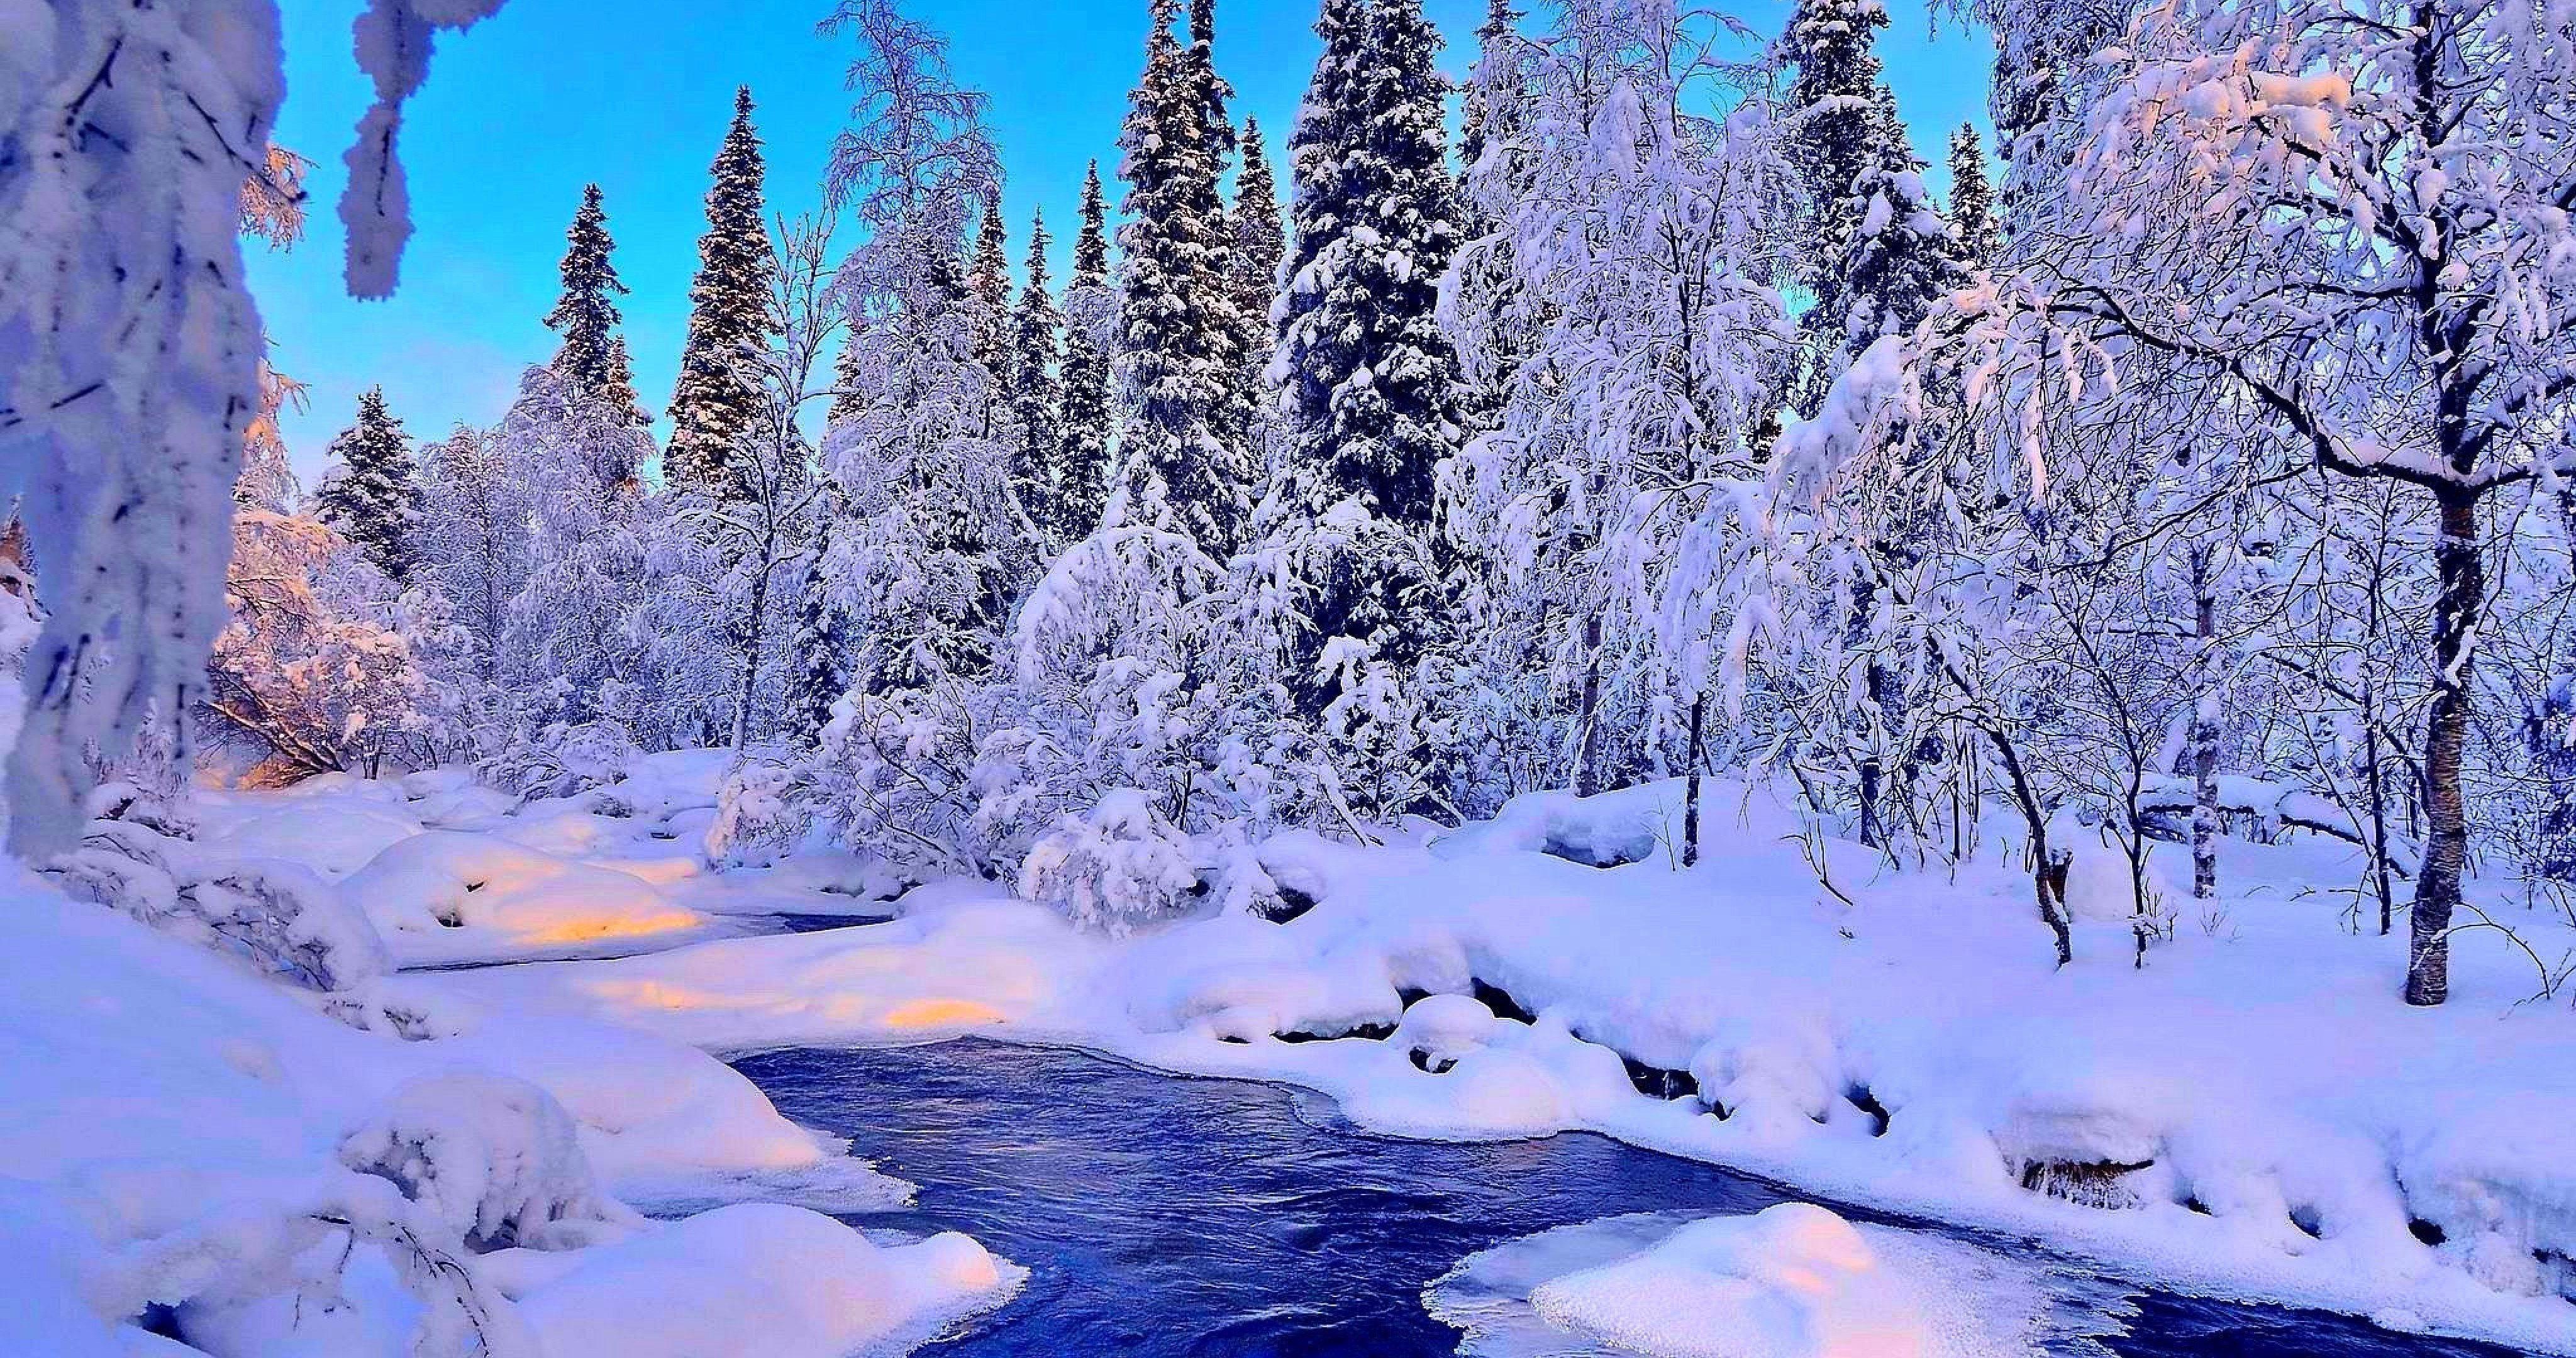 4096x2160 Hình nền mùa đông 4k Dòng sông thanh lịch vào mùa đông Hình nền 4k Ultra HD O Oshenka Inspiration - Left of The Hudson